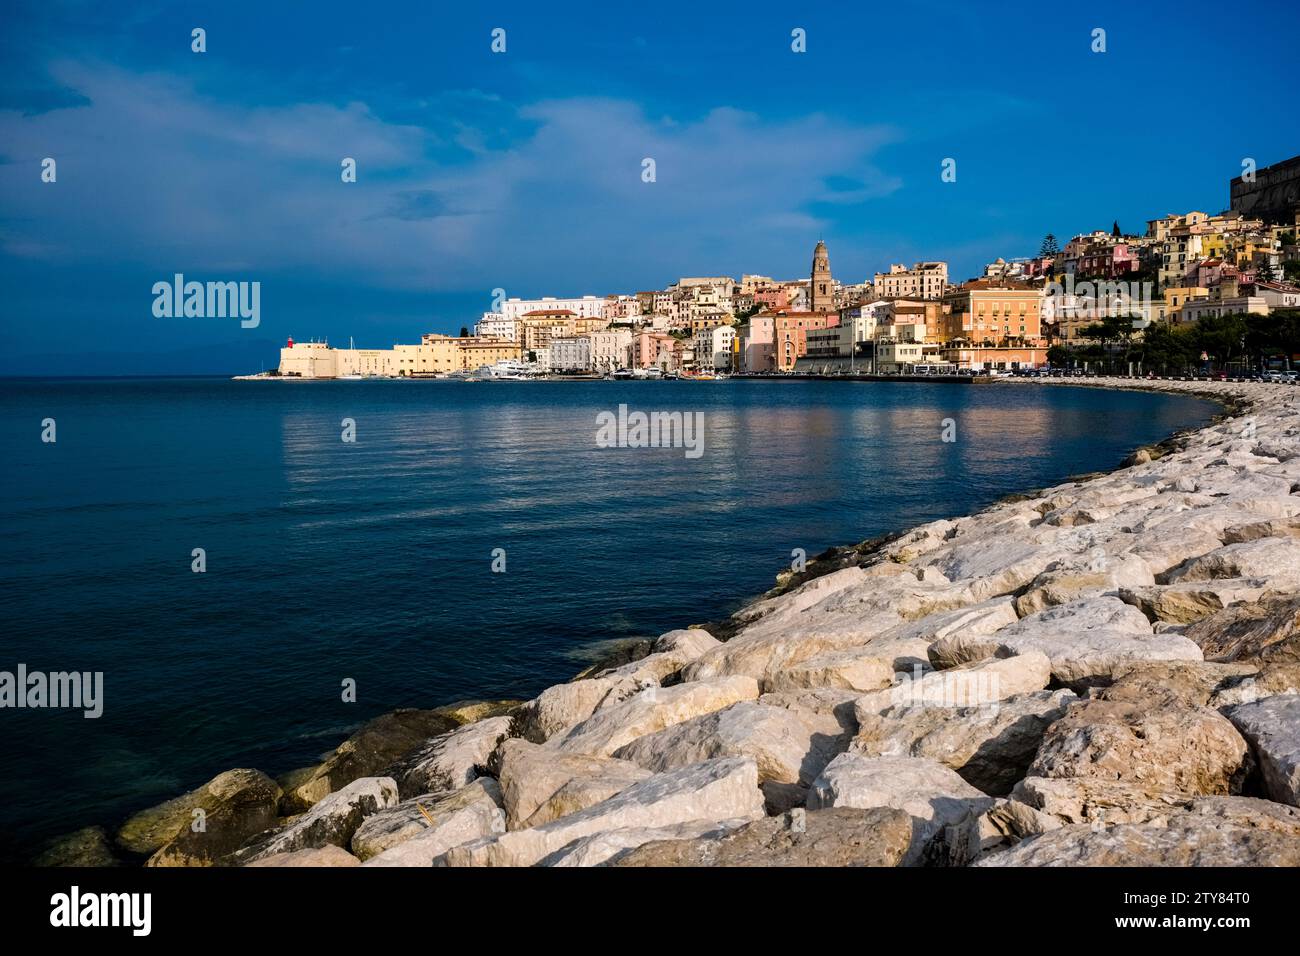 Der alte Teil der Stadt Gaeta, malerisch auf einer kleinen Halbinsel gelegen, über dem Wasser einer kleinen Bucht gesehen. Stockfoto